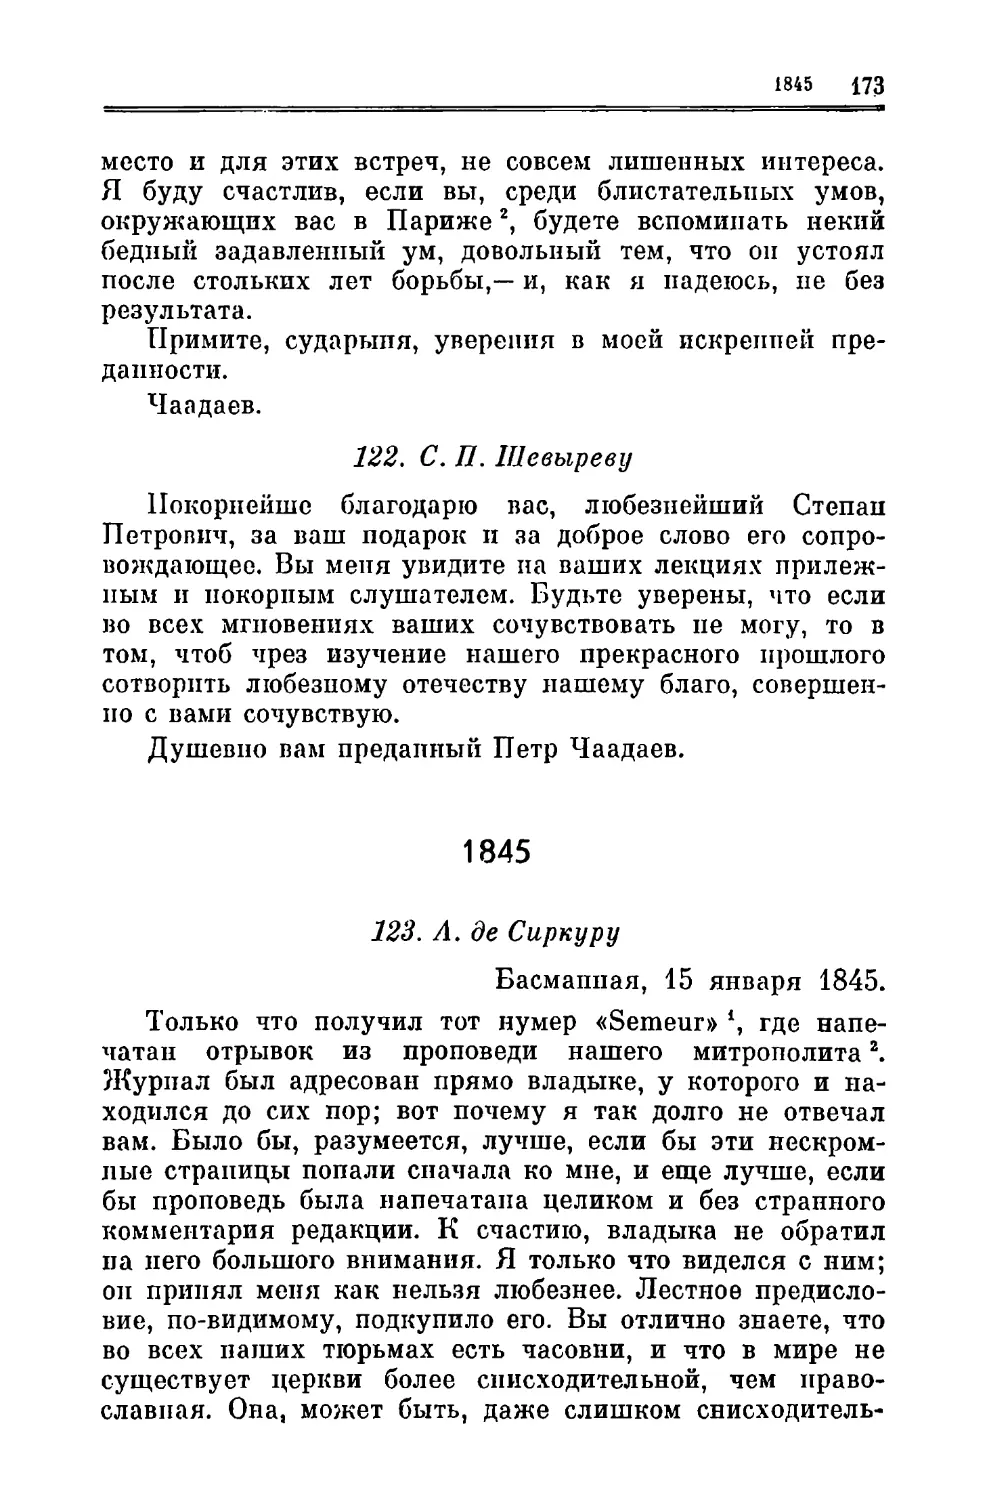 122. Шевыреву С.П.
1845